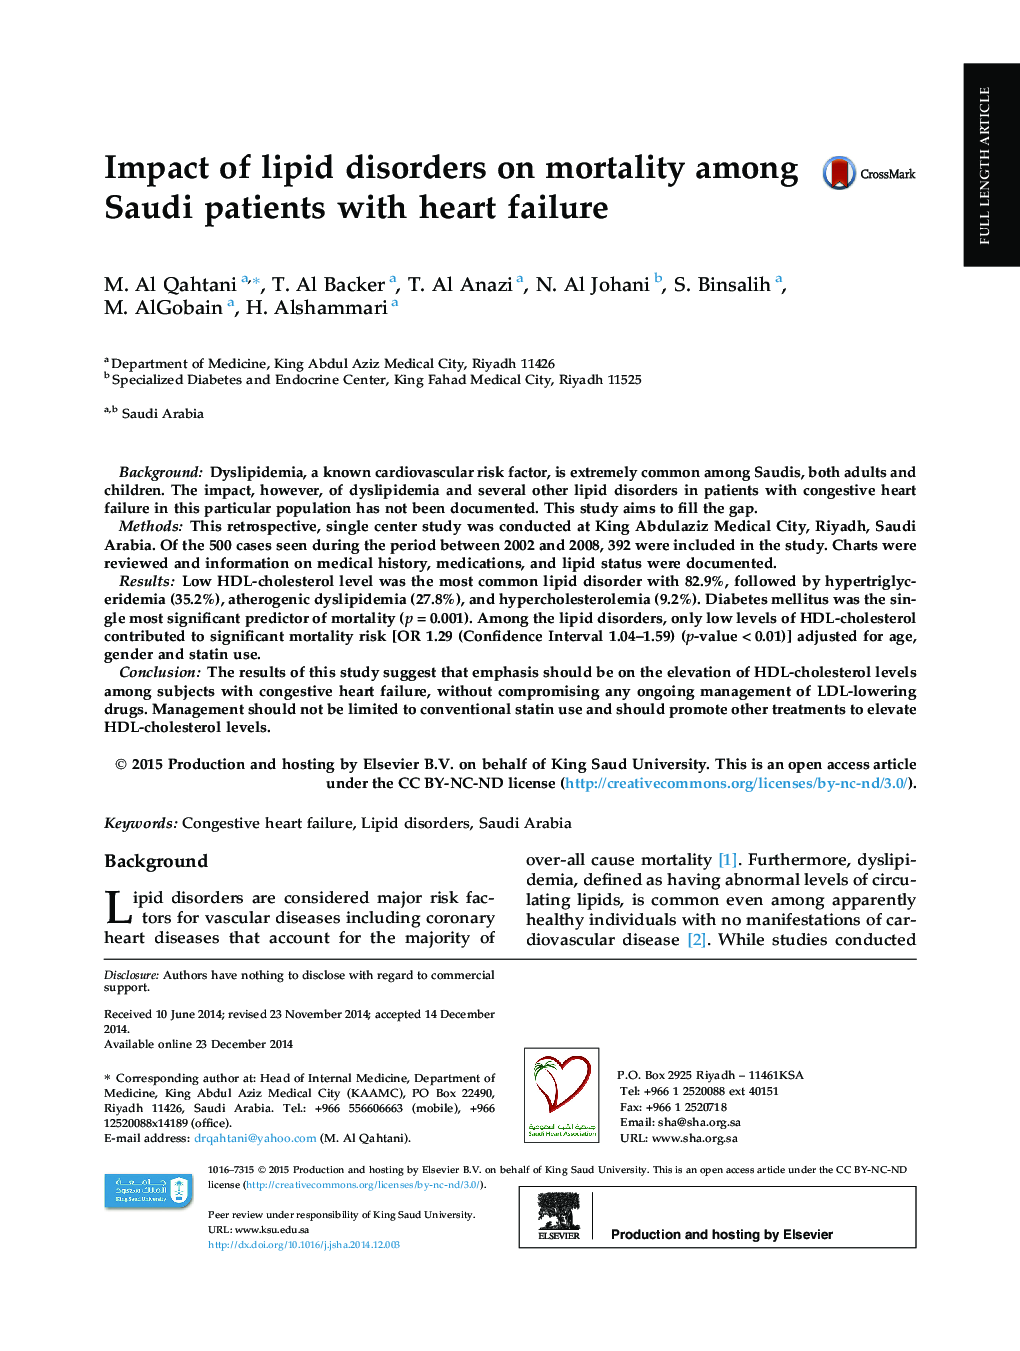 تأثیر اختلالات چربی بر مرگ و میر در بیماران سعودی که دارای نارسایی قلبی هستند 